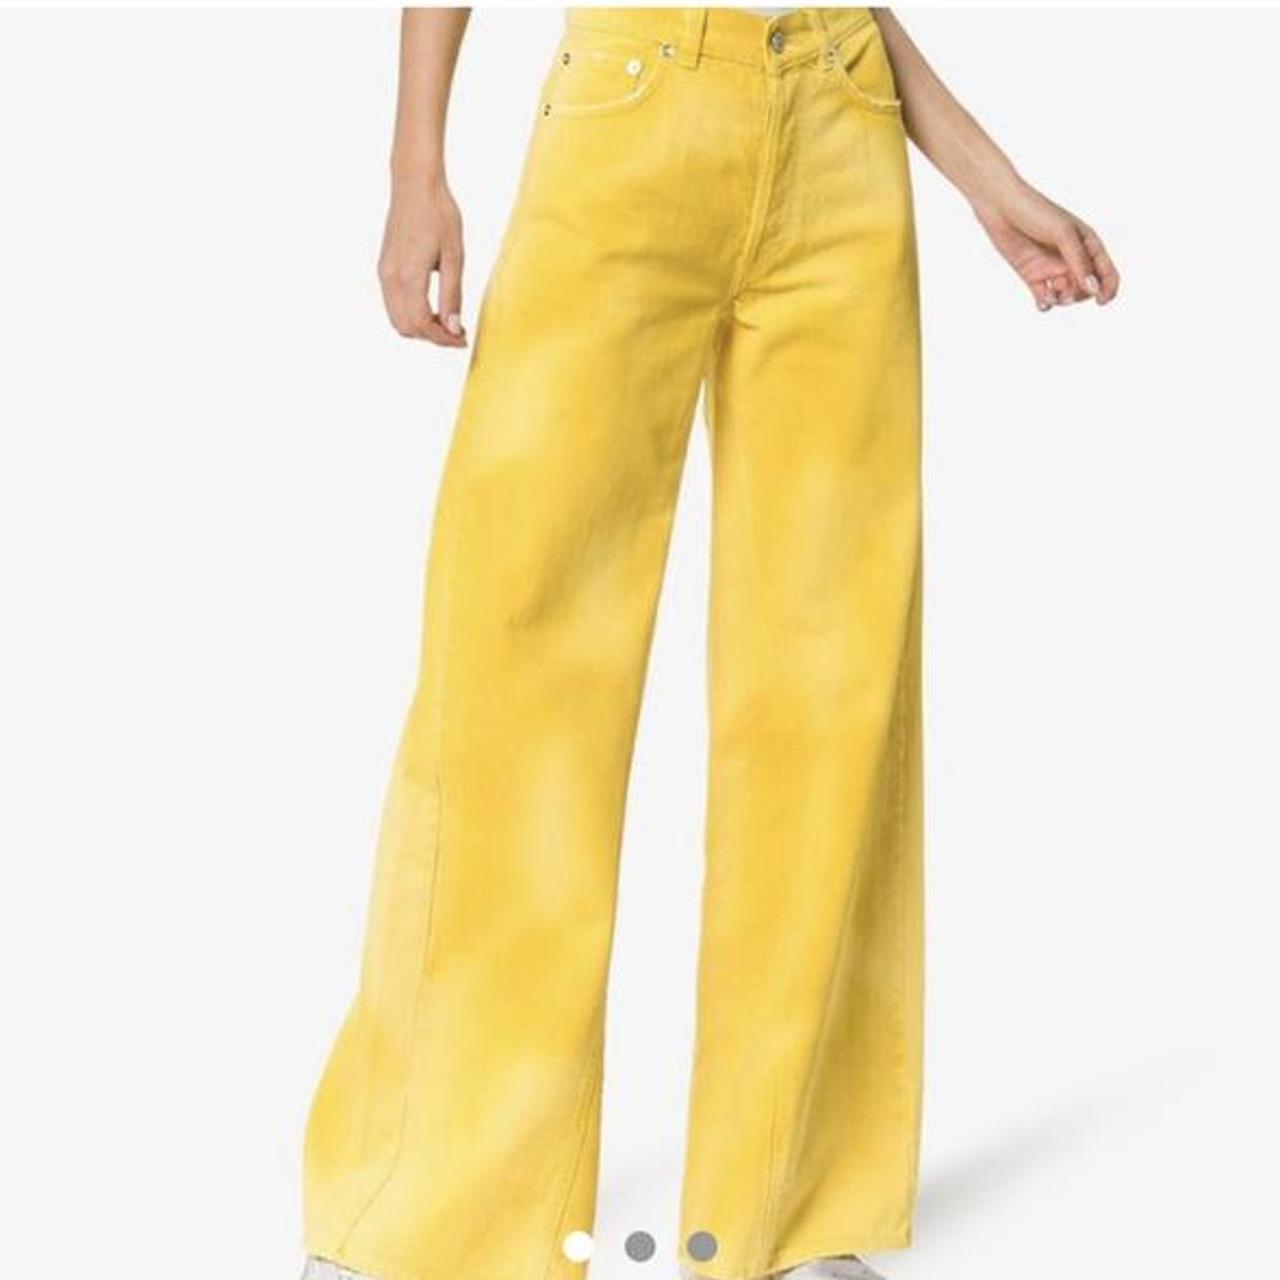 Ganni wide leg yellow special dye jeans. W29”... - Depop